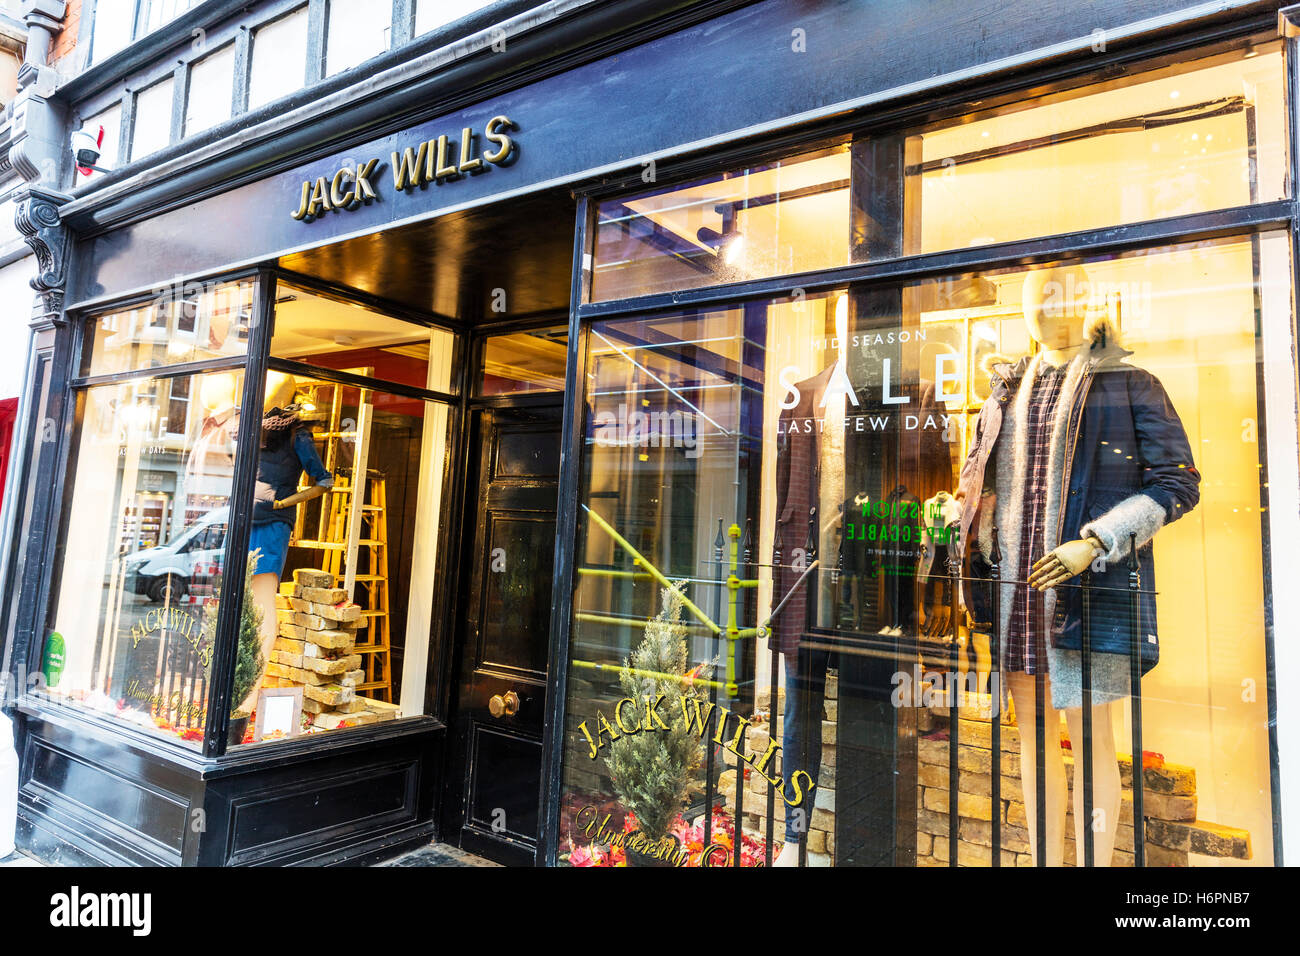 Jack Wills tienda de ropa de tiendas de High street, Nottingham, Reino Unido GB Inglaterra signo exterior fachada signos almacena Fotografía de stock Alamy